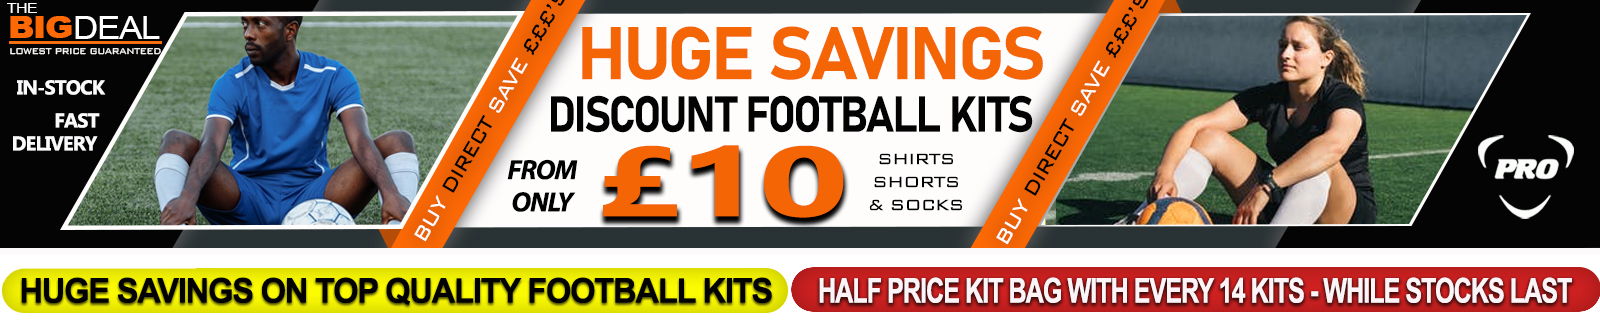 orange football kits